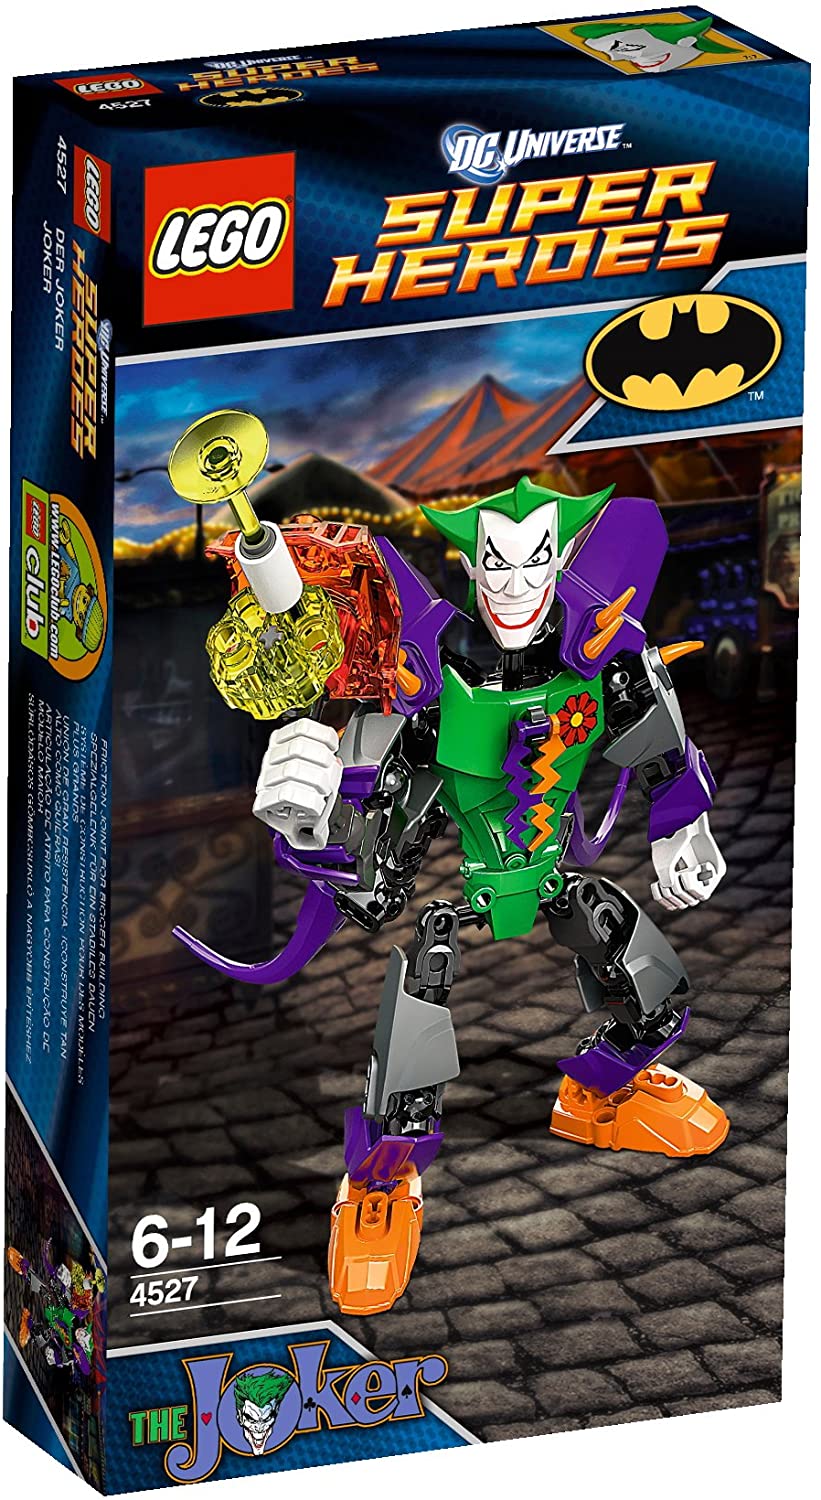 The Joker (4527)